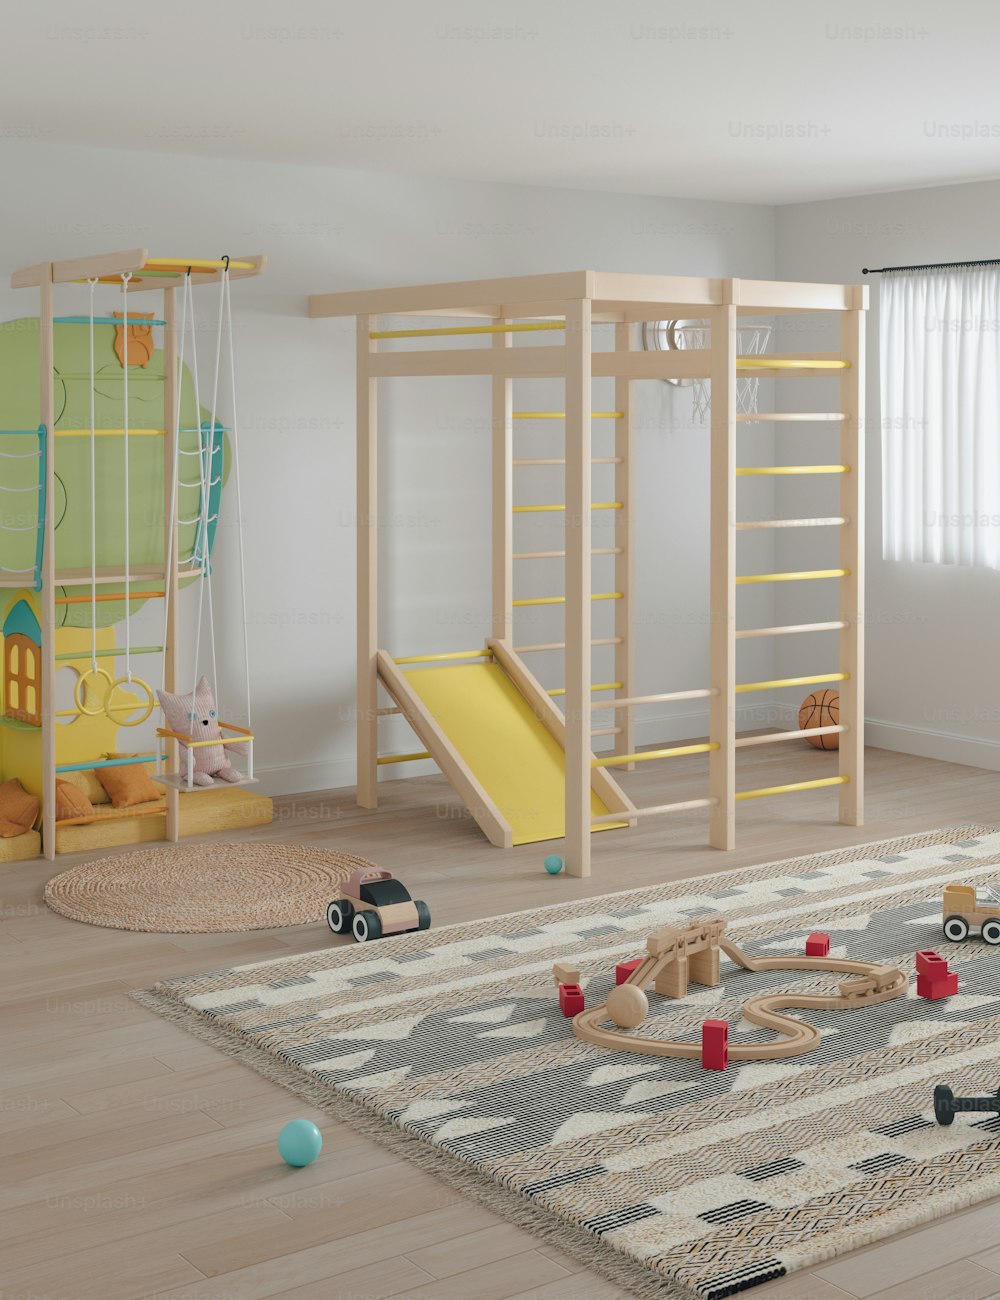 uma sala de jogos infantil com um escorregador e brinquedos